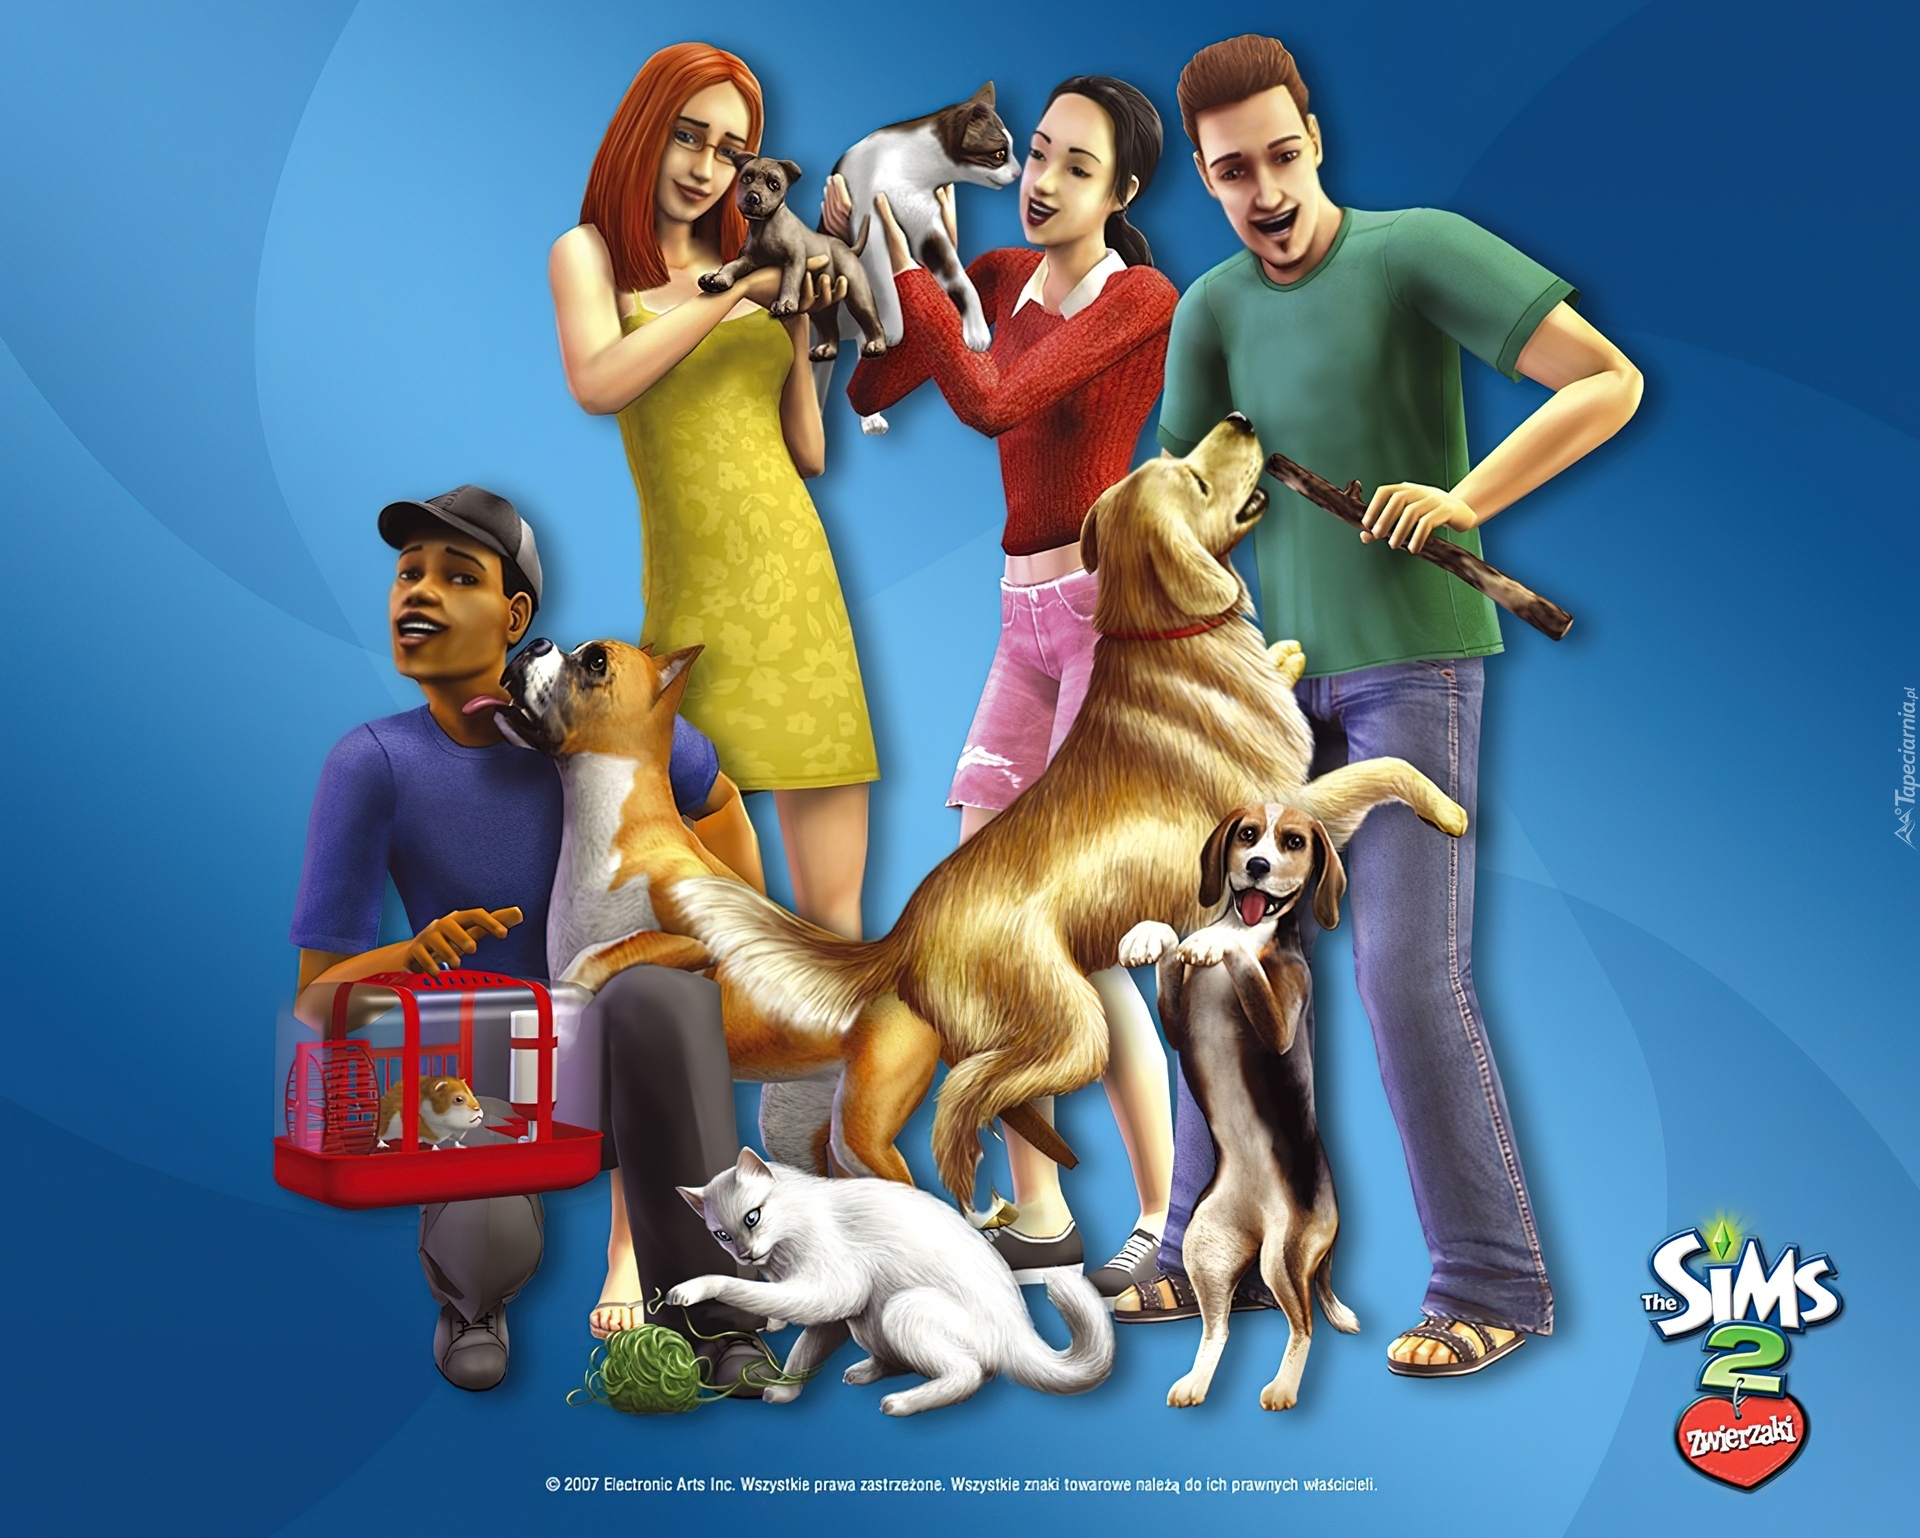 The Sims 2, Zwierzaki